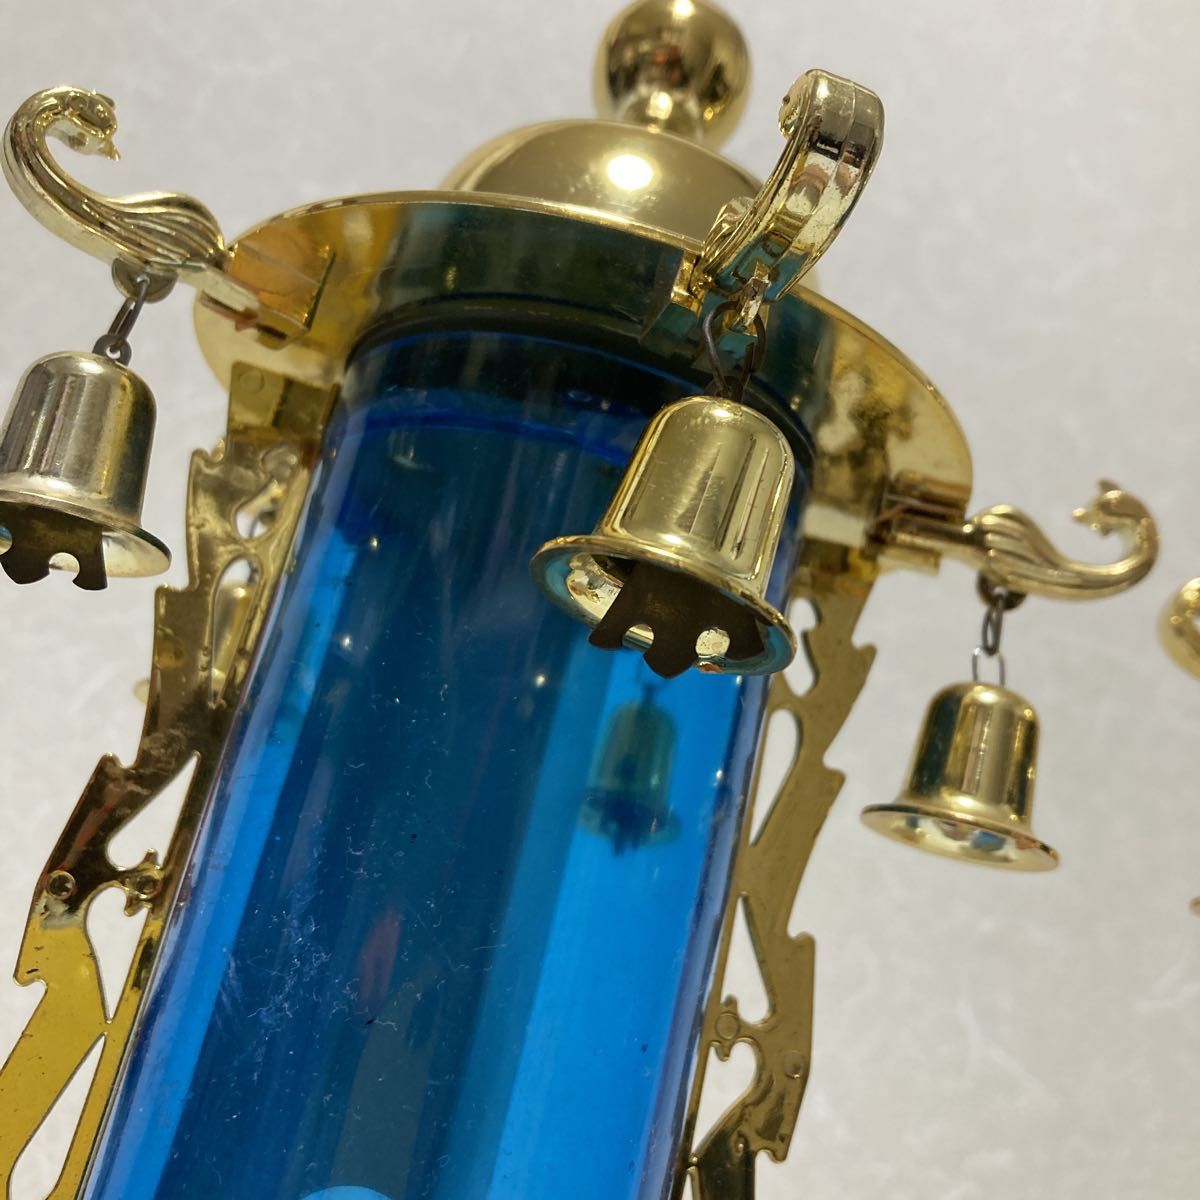 盆提灯 霊前灯 バブル灯 鈴付 ブルー 一対 プラスチック製 電気コード式 ゴールド 仏具 お盆 灯籠 掘出し品  仏壇